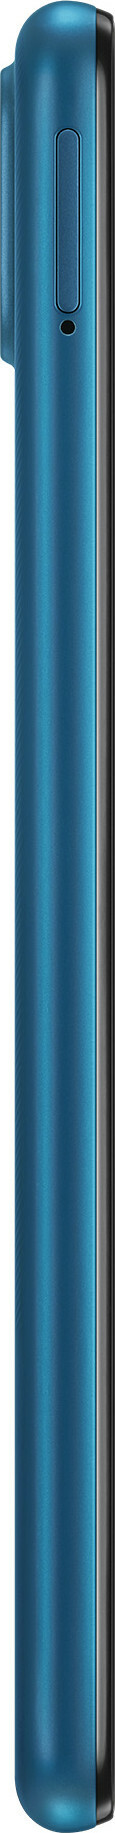 Samsung Galaxy A12s (Nacho) 128GB